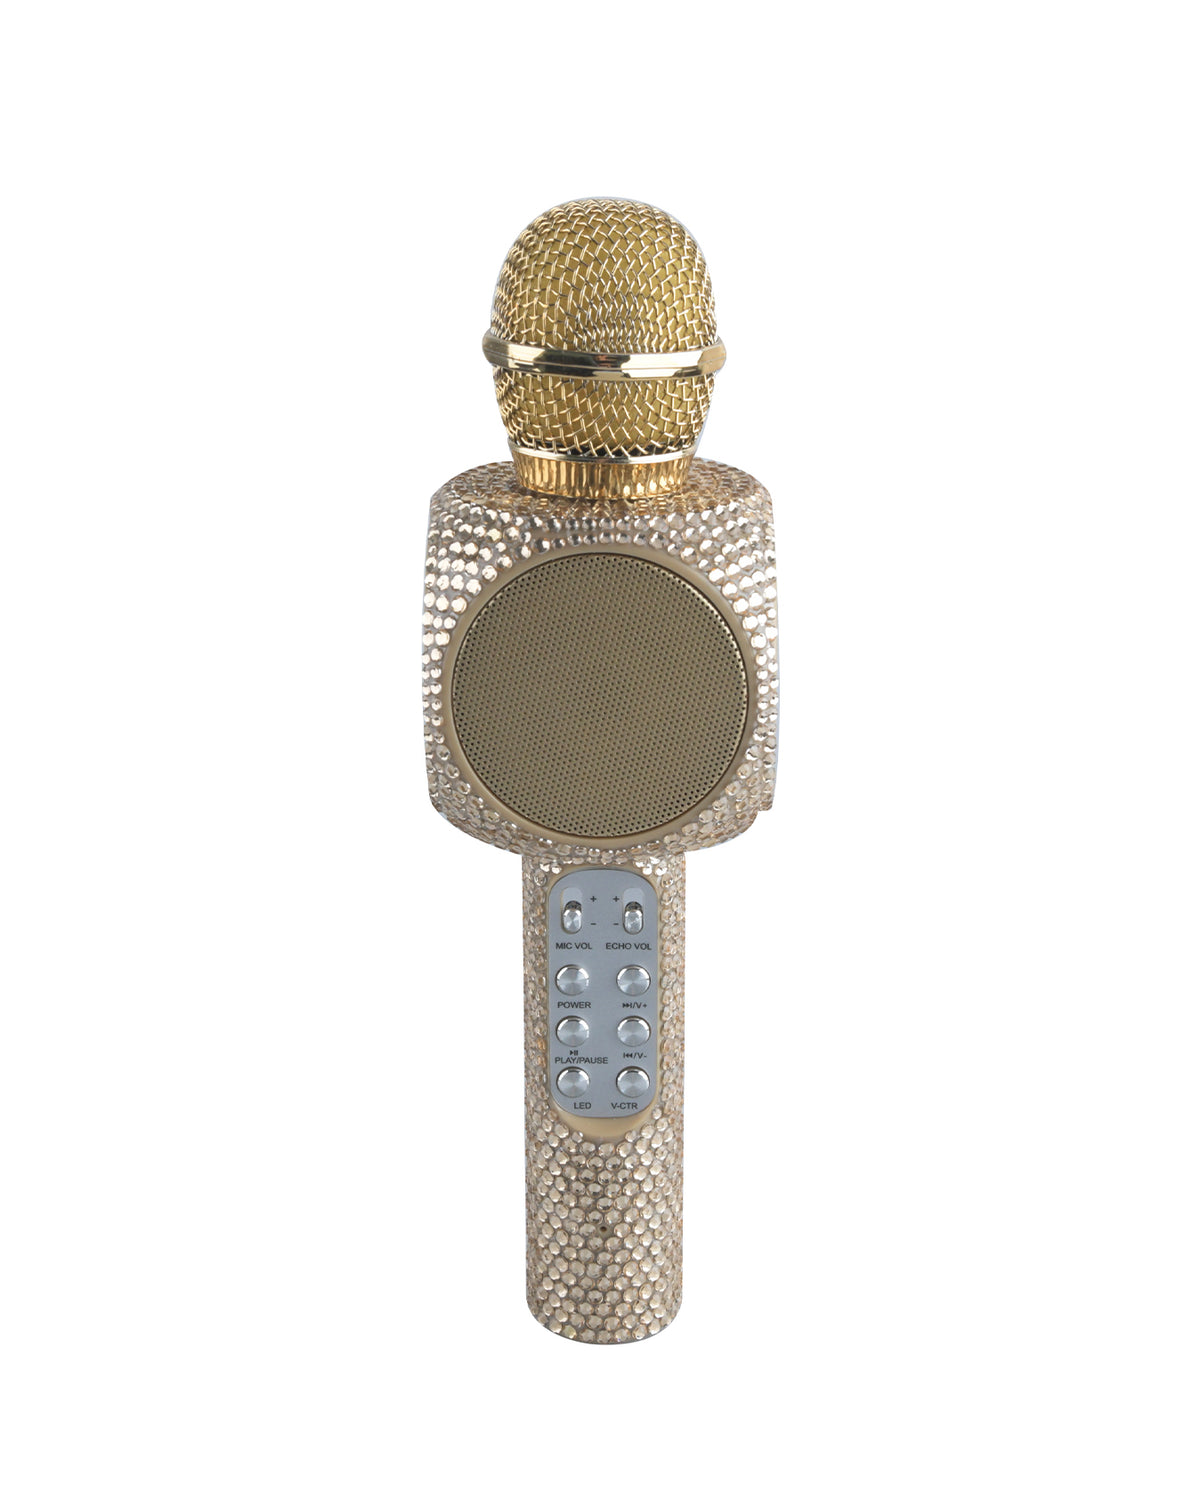 Sing Along Gold Bling Karaoke Bluetooth Microphone